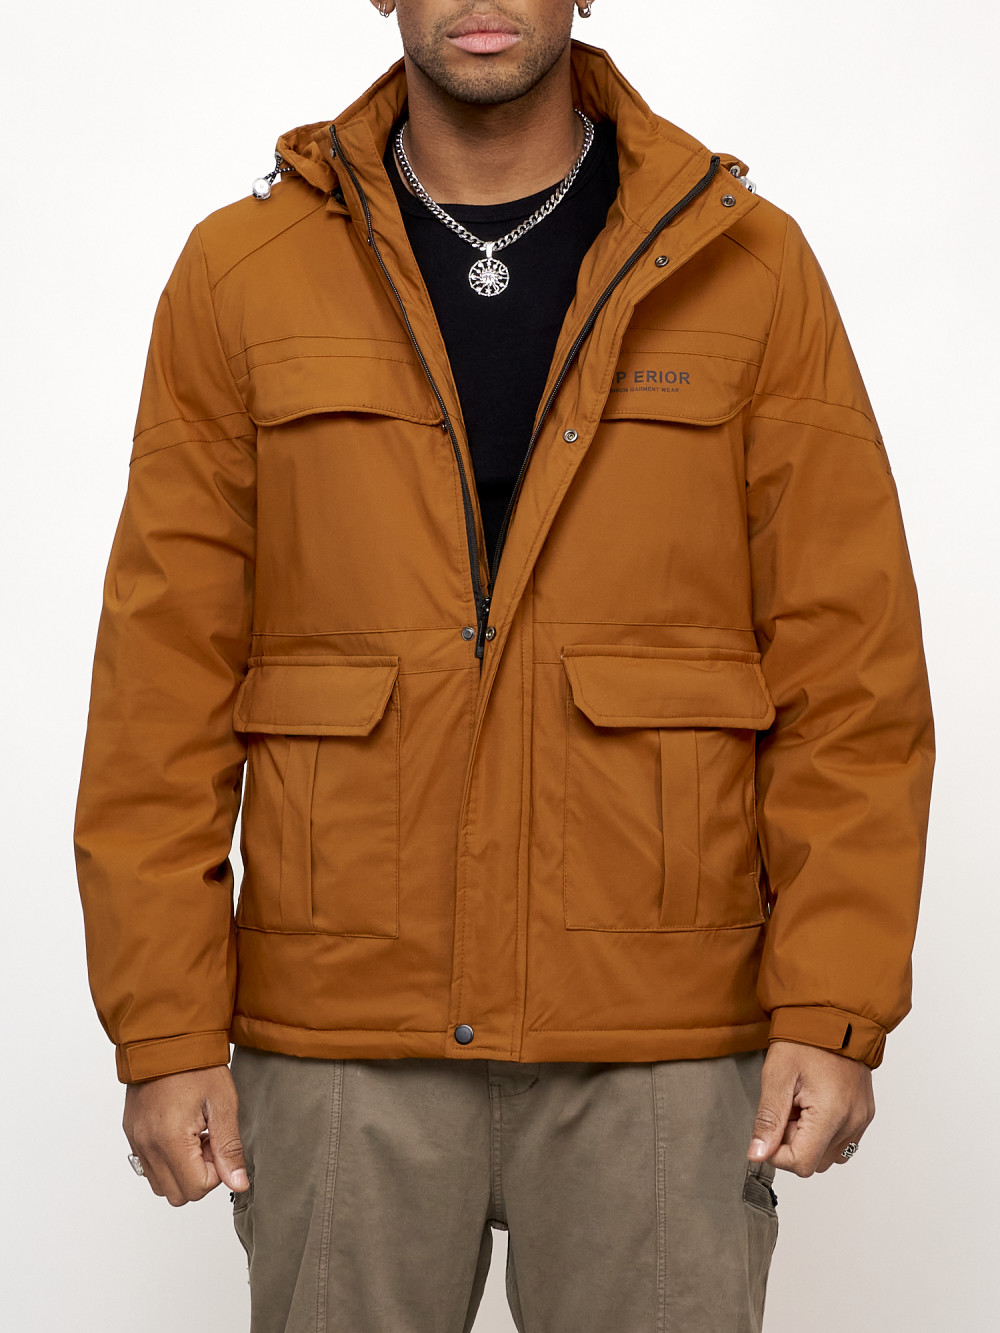 Куртка мужская MG AD88031 желтая 3XL - купить в Москве, цены на Мегамаркет | 600016032750